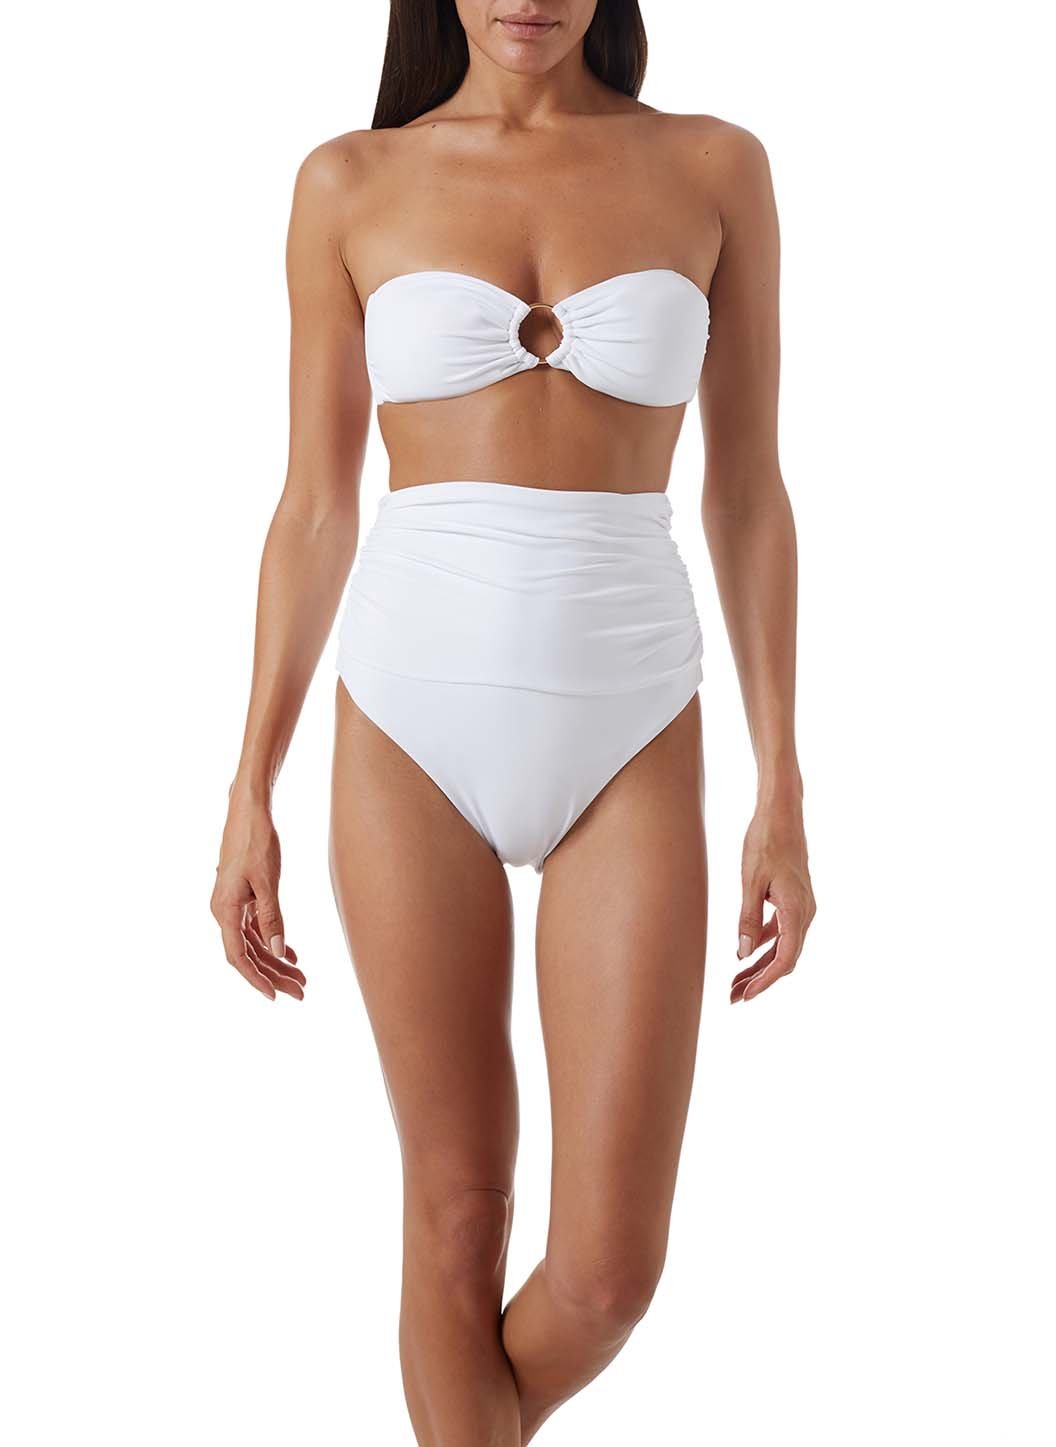 ancona-white-high-waisted-bandeau-bikini-model_P